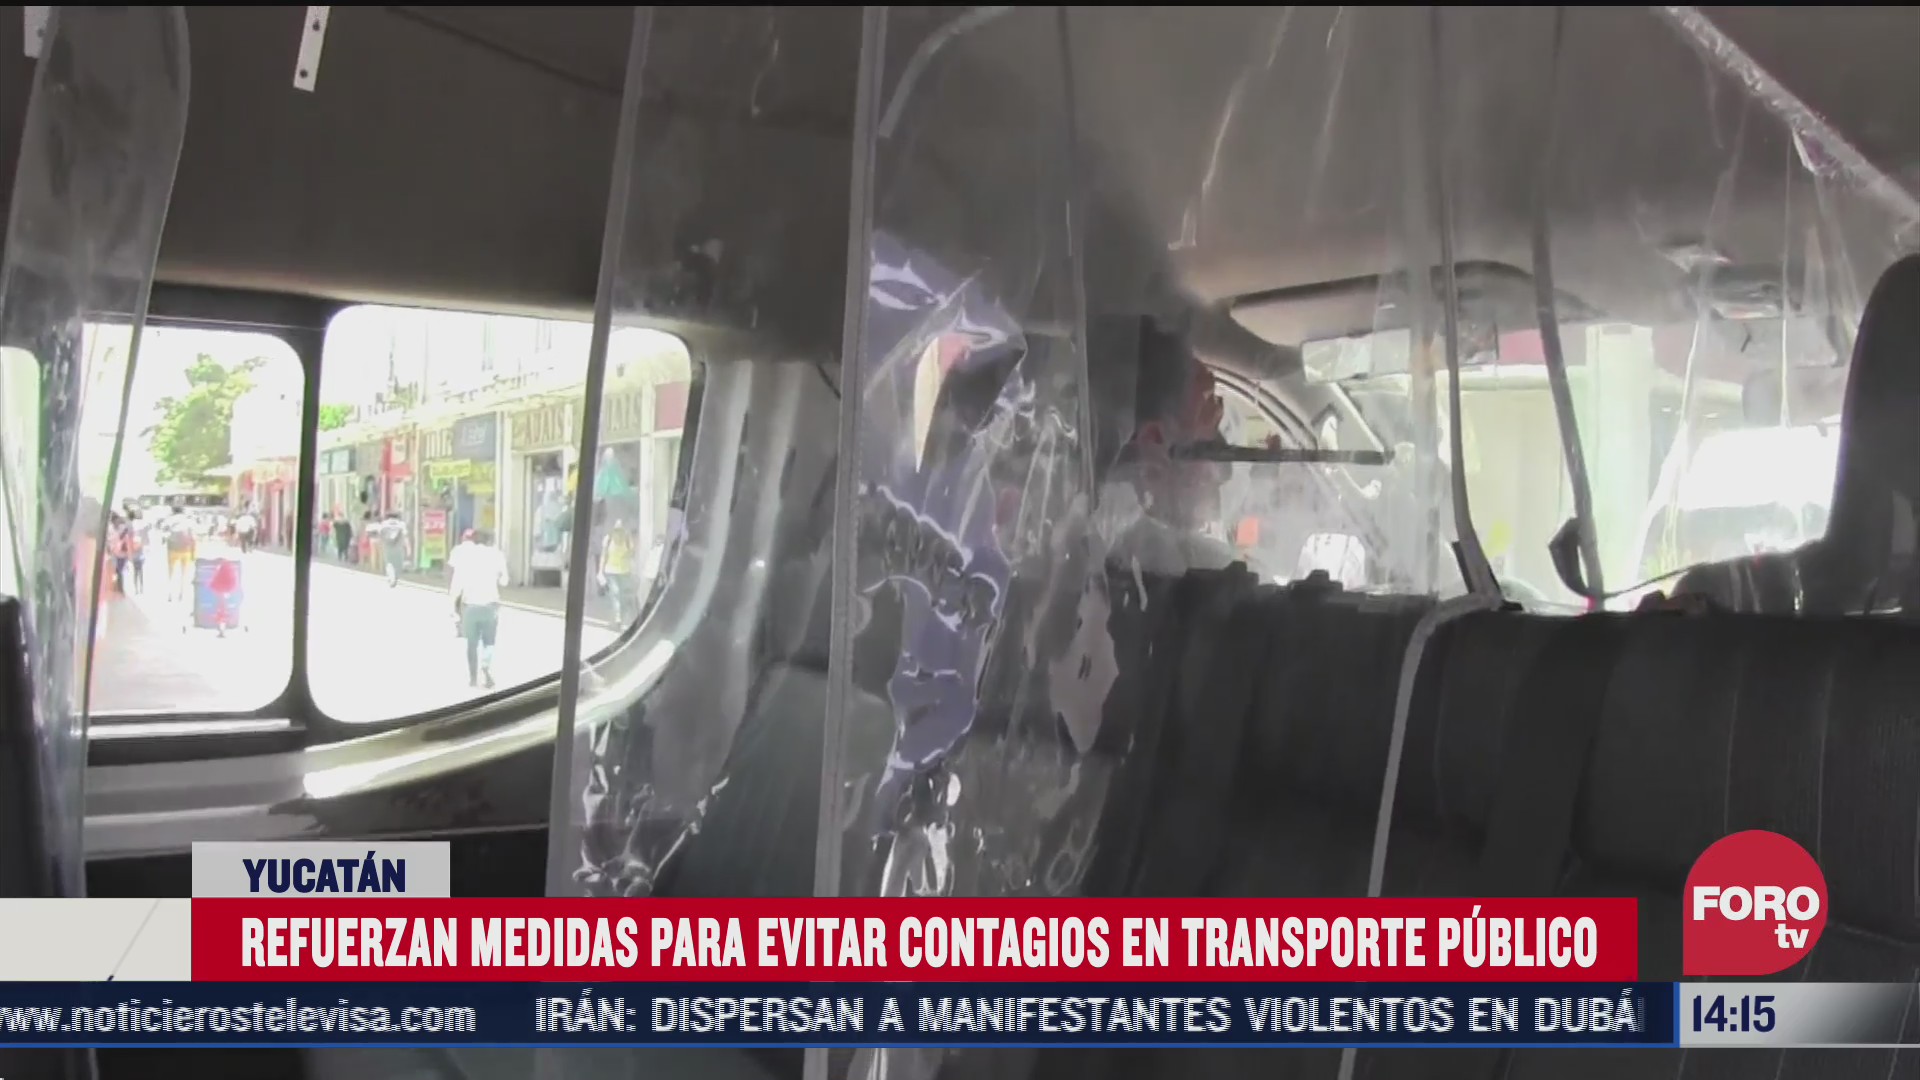 instalan acrilicos en transporte publico de yucatan para evitar covid